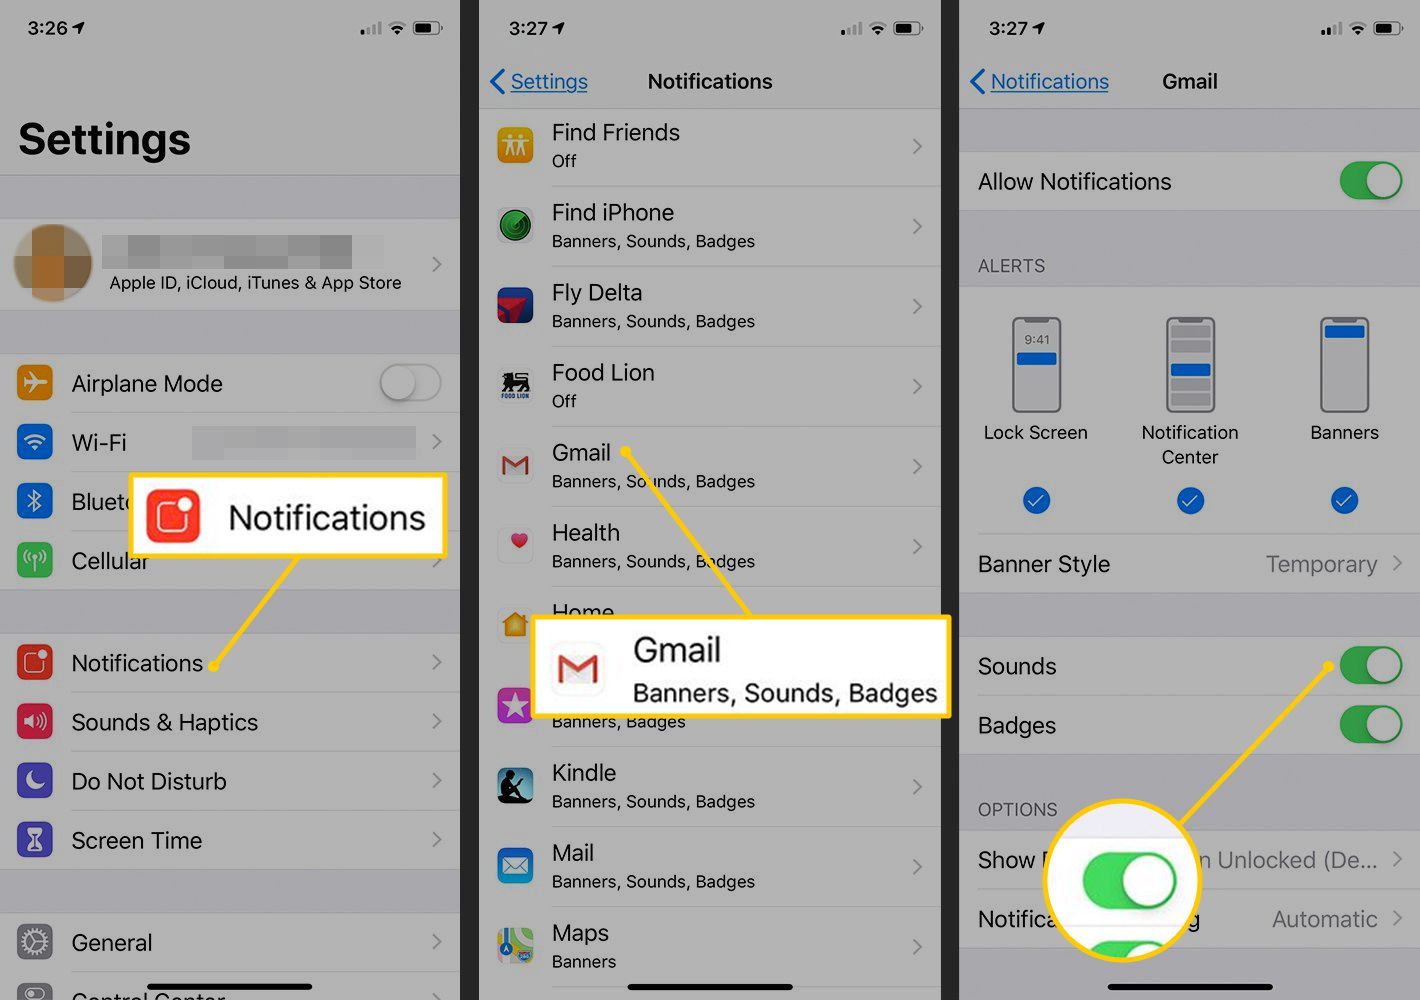 Уведомления, Gmail, звуки переключаются в положение ON в настройках iOS